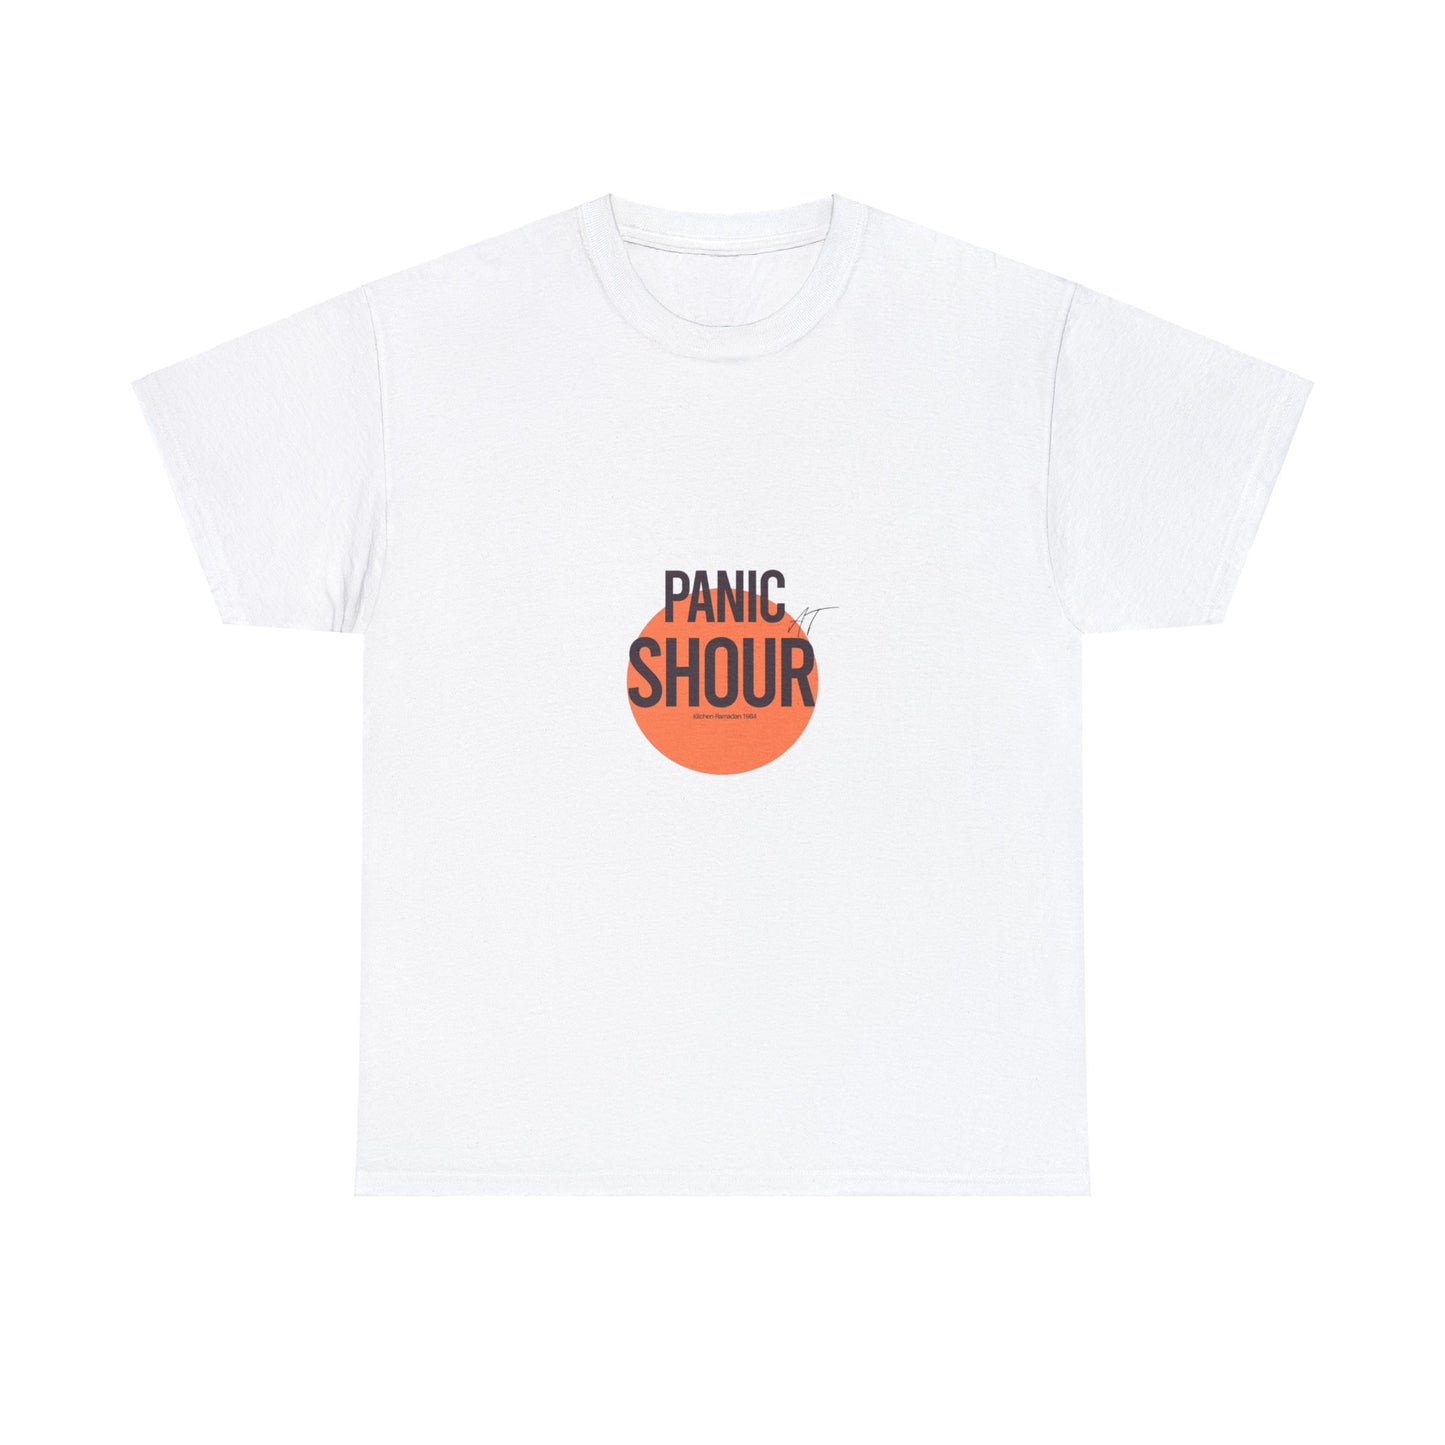 Panic at shour t-shirt